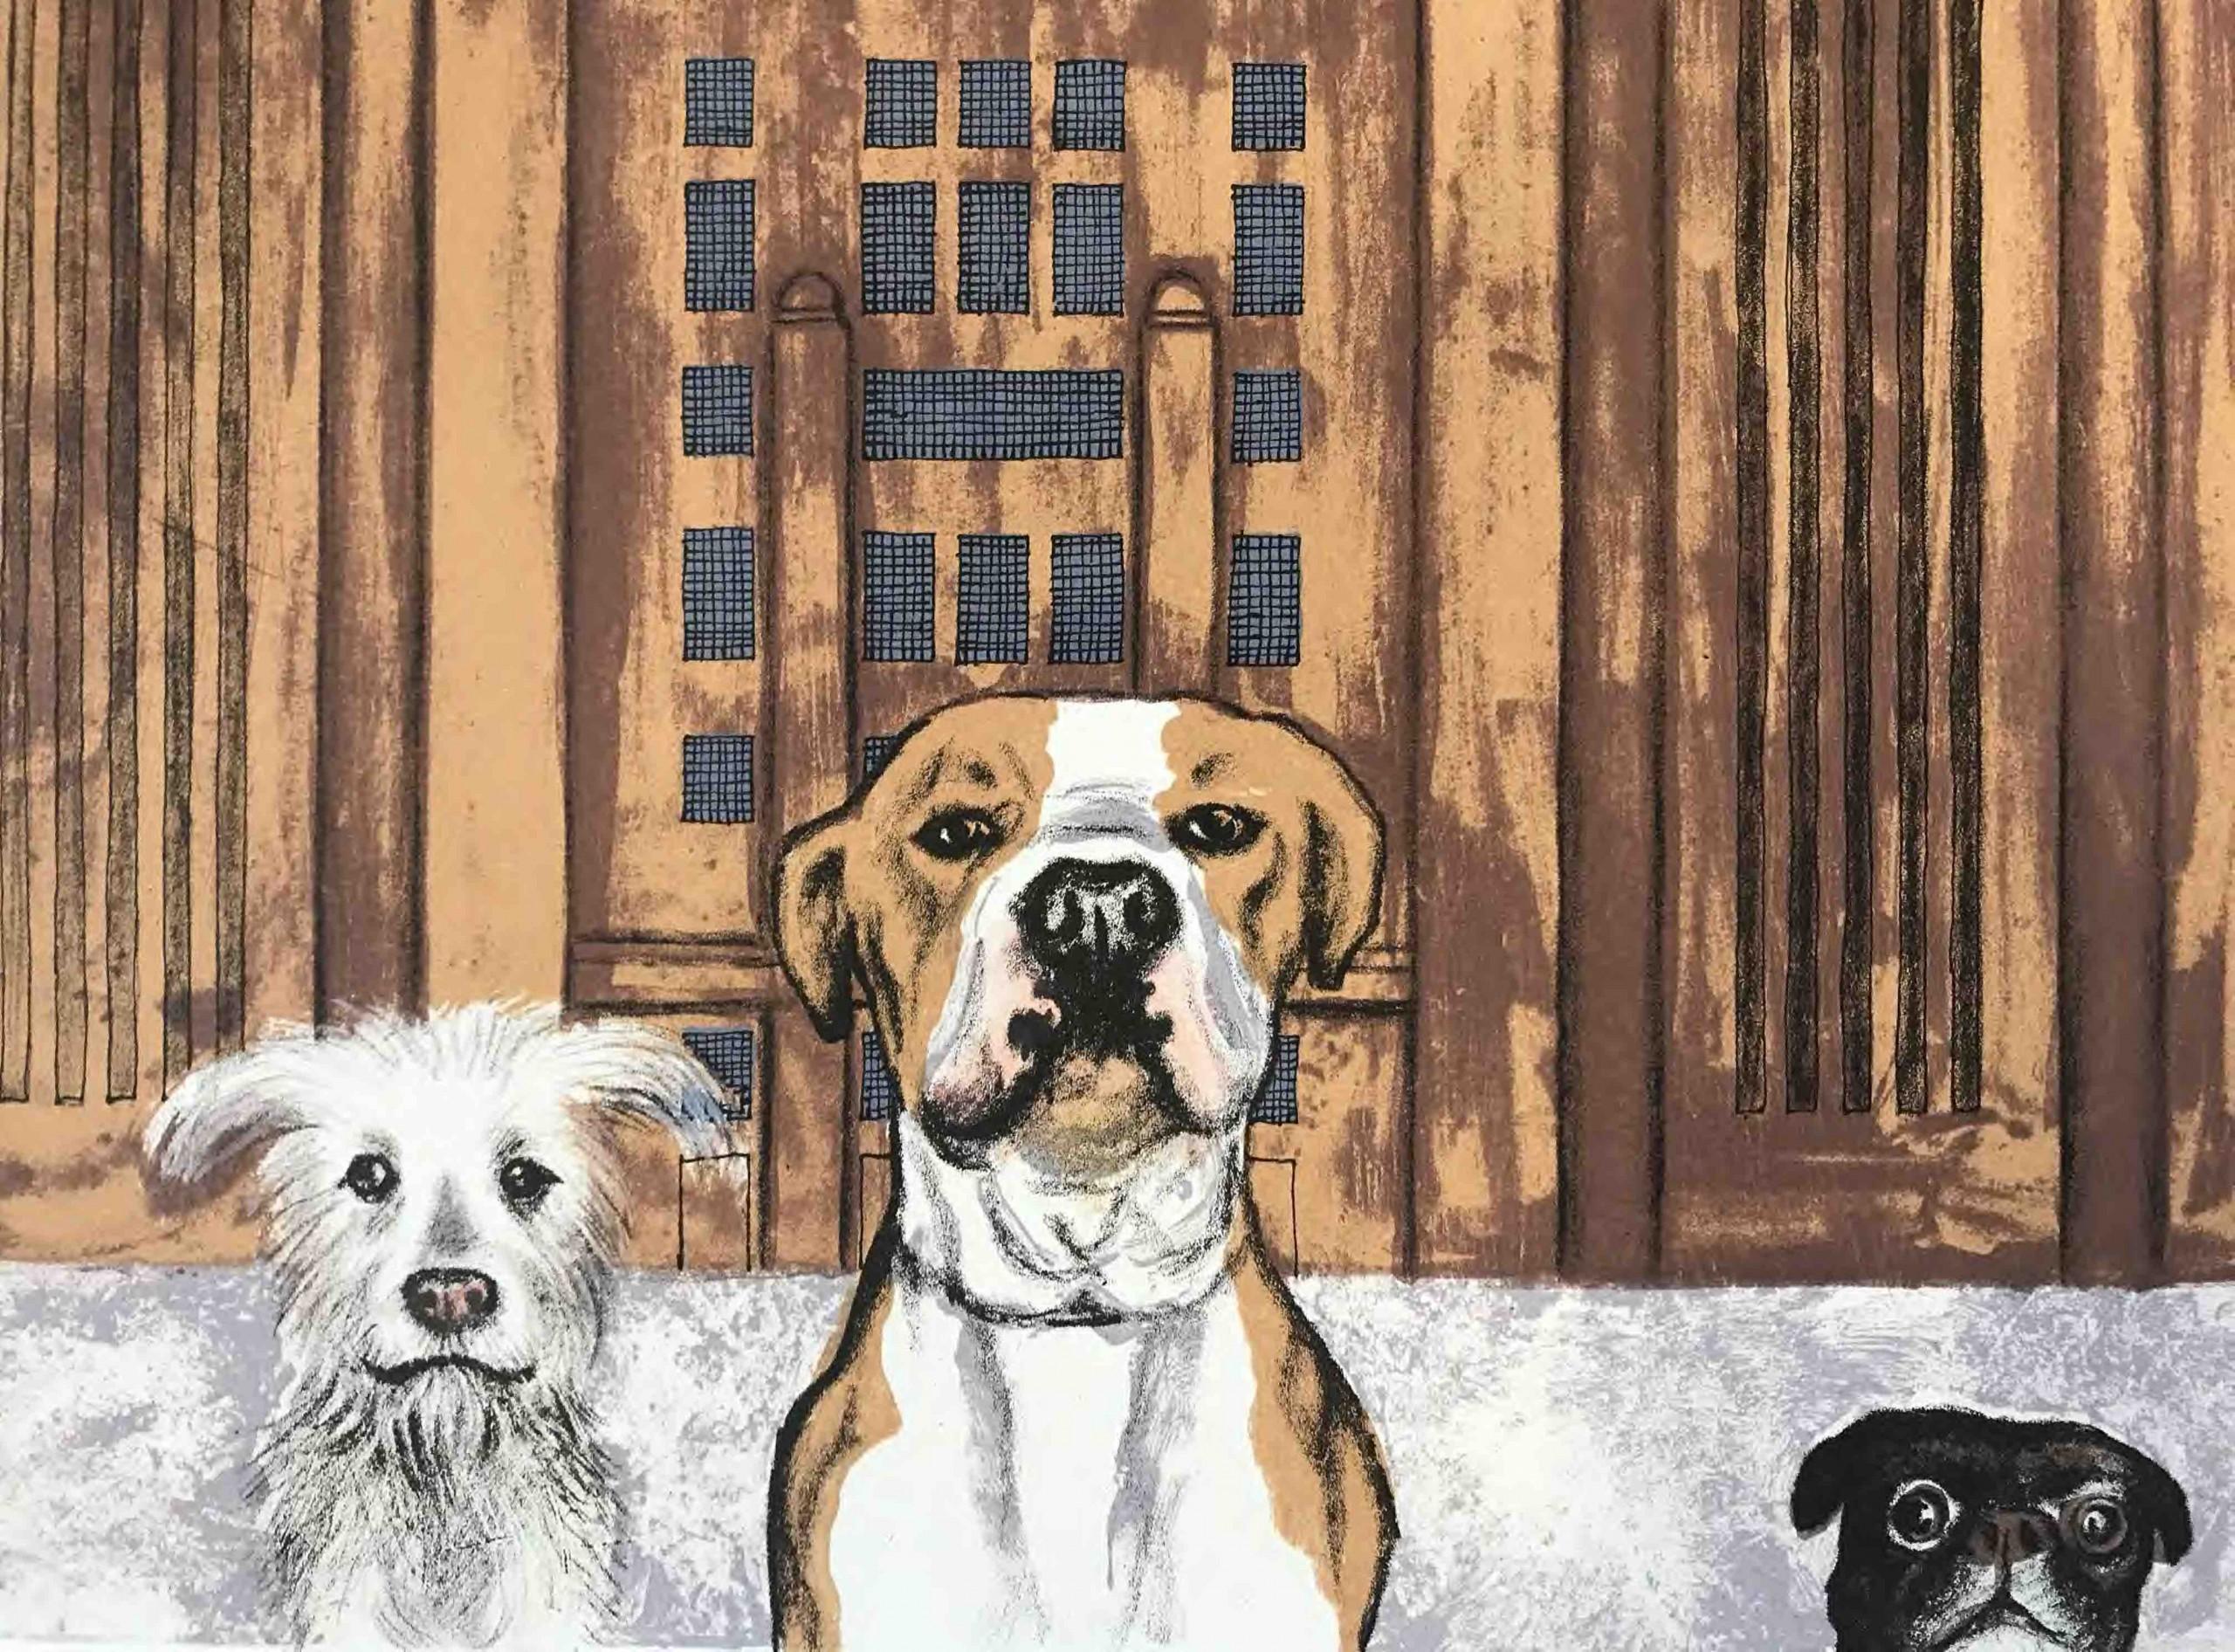 Wes Anderson's Dogs - Battersea Power Station des Künstlers Mychael Barratt ist ein Druck in limitierter Auflage. Diese humorvolle Szene zeigt drei Hunde, die über den Rand des Bildes schauen, während ein schwebendes Schwein zwischen den Rohren des